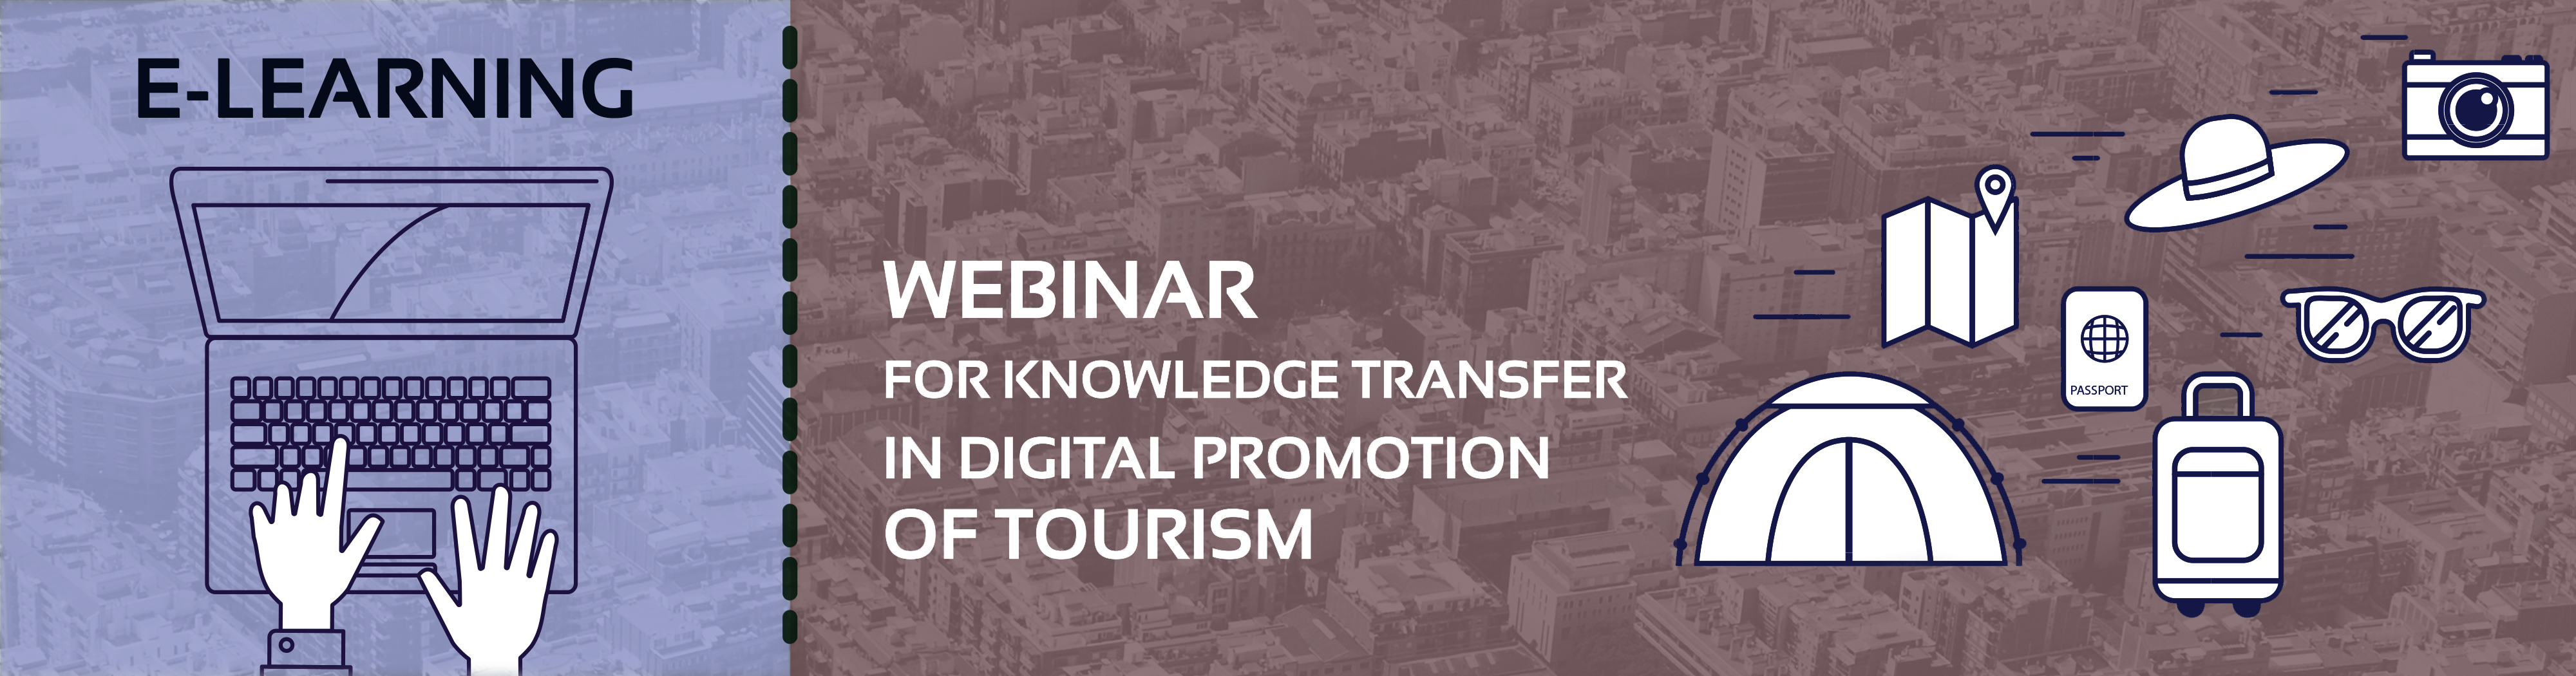 Webinar de Transferência de Conhecimento em Promoção Digital do Turismo